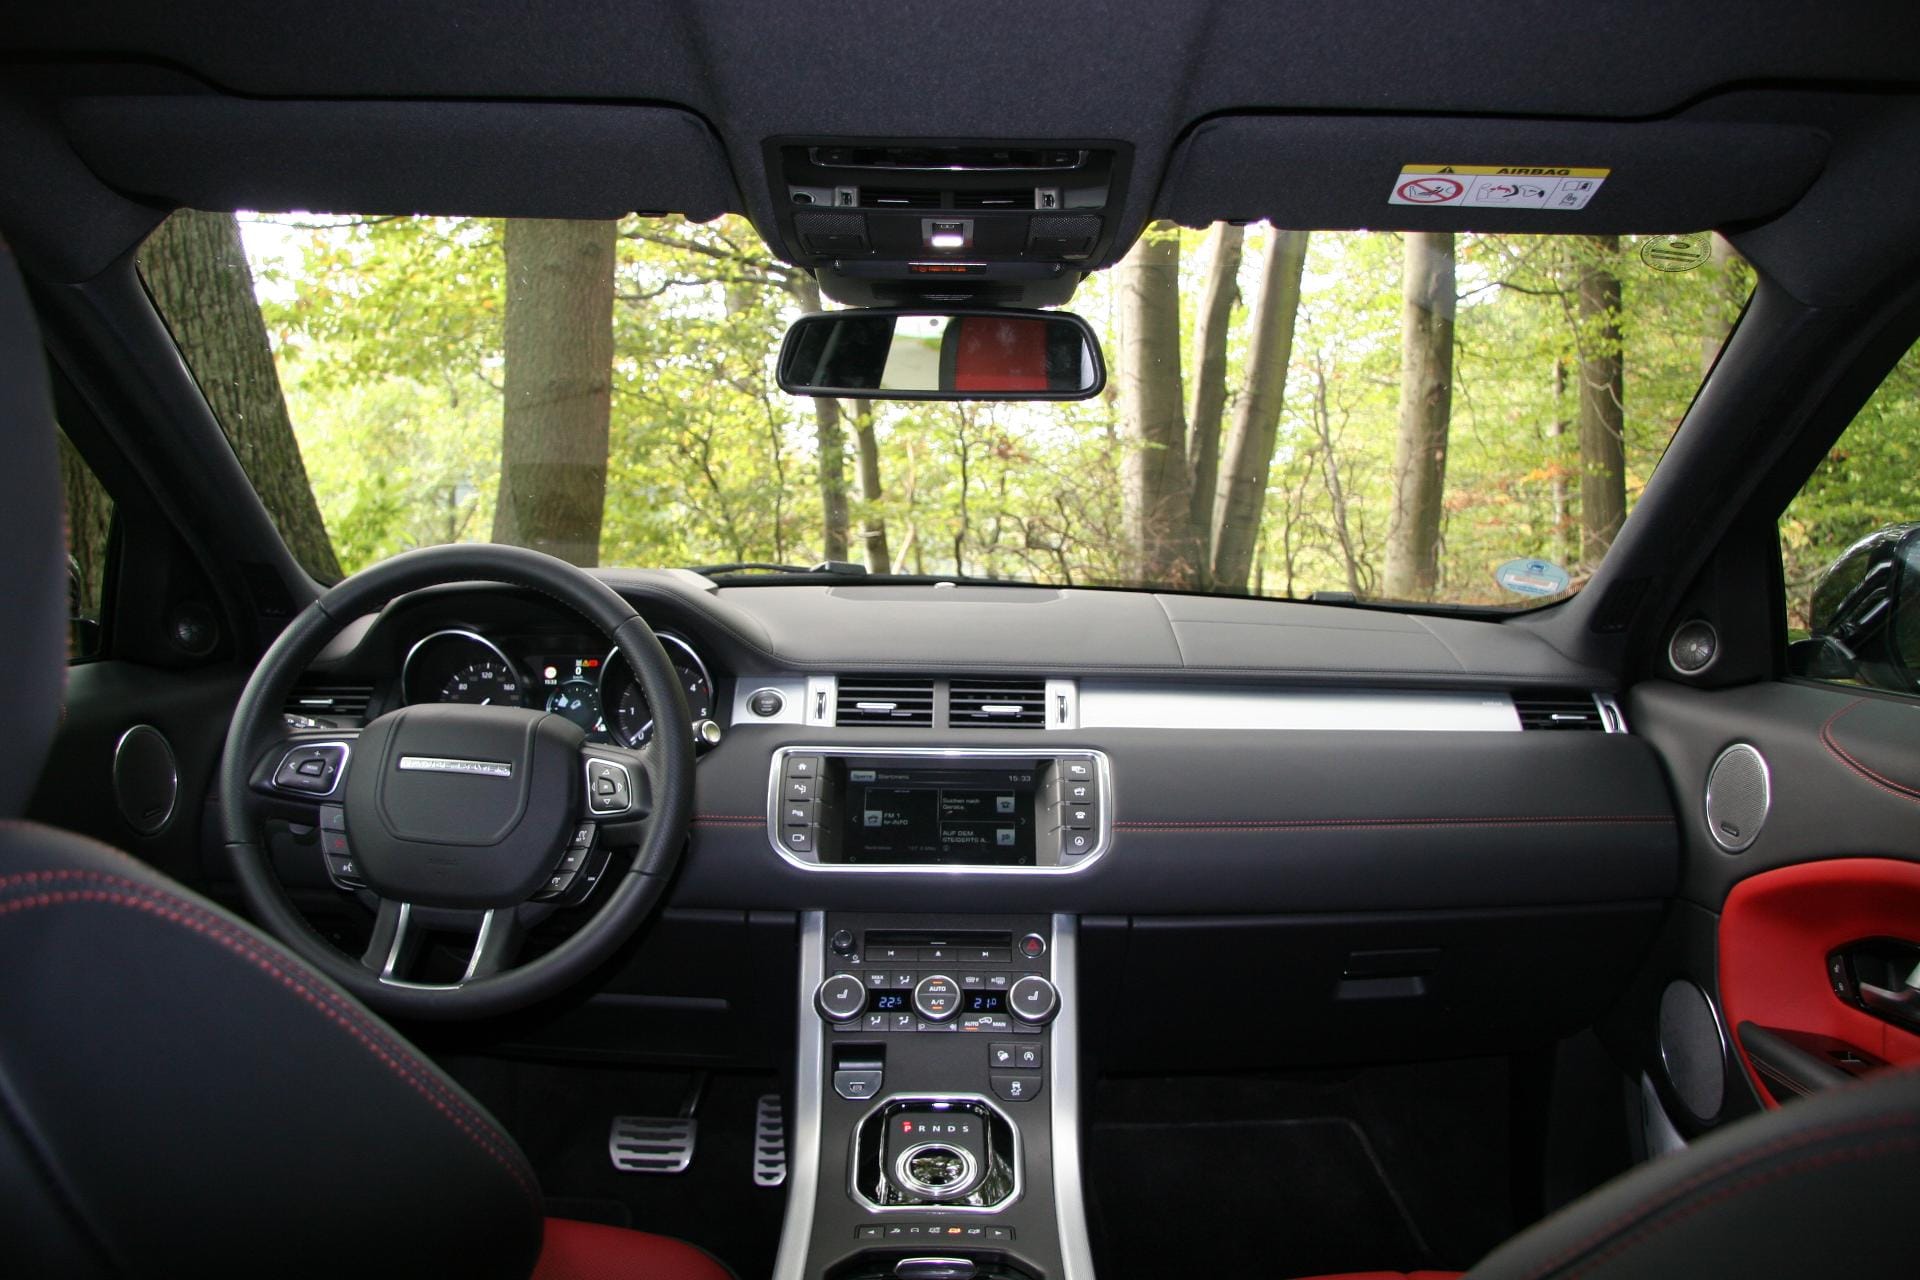 Behaglich, modern und einfach zu bedienen: Das sauber verarbeitete Cockpit im Range Rover Evoque.